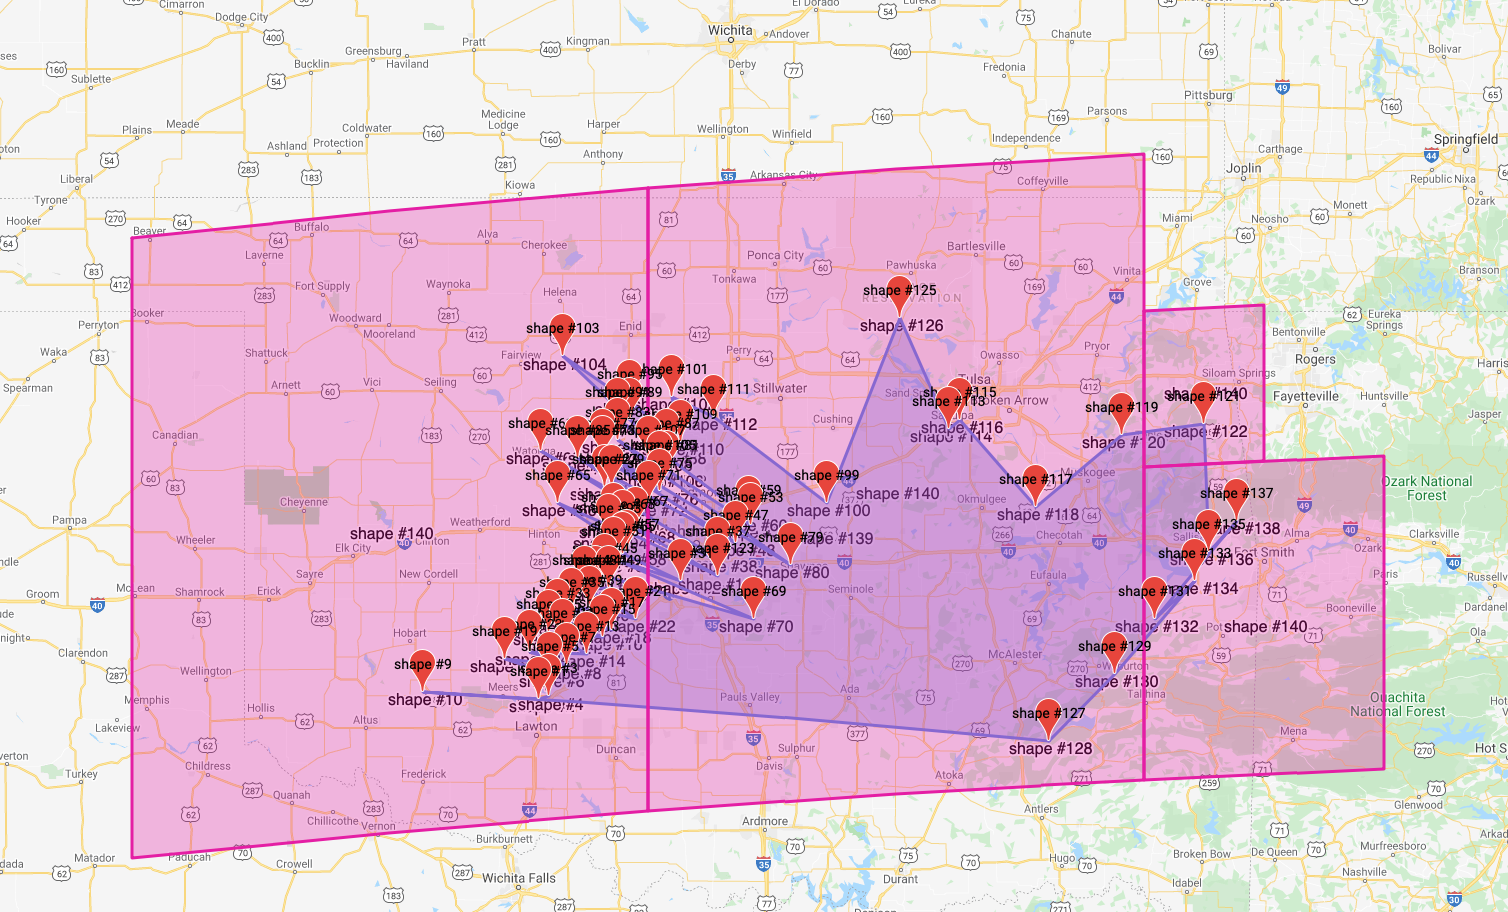 1999 Oklahoma tornado outbreak map view